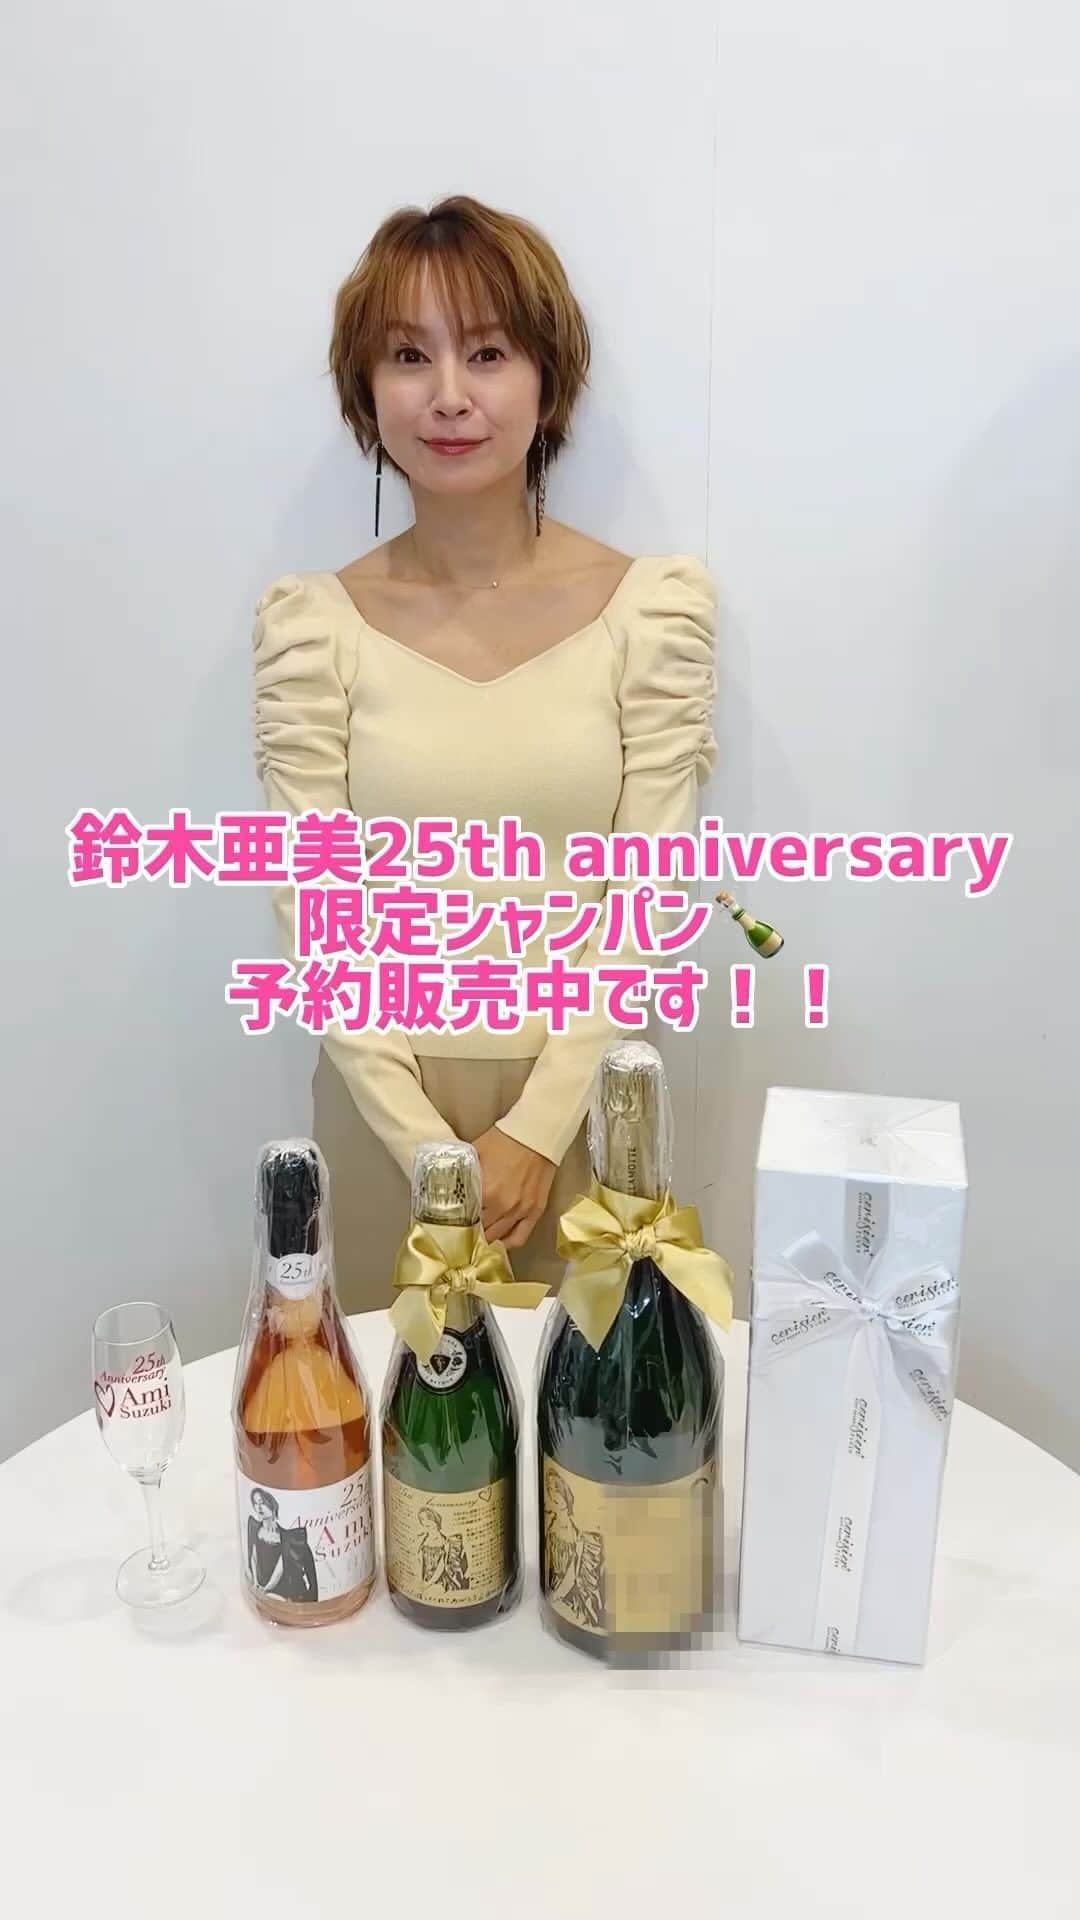 鈴木亜美のインスタグラム：「「鈴木亜美 25th anniversary限定シャンパン」はもうチェックしてくれましたかー😌❓  ファンのみなさんに25周年の感謝の気持ちを込めて、メッセージをボトルにしたためました❤️  みんなからのメッセージで寄せ書きを作るボトルも用意したので、コメント楽しみにしています✍️❣️  お渡し会付きのシャンパンは、申し込み期限が【12月10日まで】なのでお早めにチェックしてください🙌❗️  改めまして25周年ありがとう！ そして、みんなでお祝いしましょう🥂  ----- ▼ラインナップ 🍾メッセージ刻印マグナムシャンパン 🌟直筆メッセージとサインを彫刻！ 🌟お渡し会イベント（ 12月中旬 都内近郊予定）で直接手渡しでお渡し＋ツーショット撮影付き♪  🍾メッセージ刻印限定シャンパン＆限定ライブフォトフレーム付 🌟直筆メッセージ彫刻  🍾寄せ書き彫刻シャンパンボトル（720ml)  🌟クルーと一緒に皆さんのメッセージを彫刻！  🍾25周年限定 AMIロゼスパークリング（720ml）✨  先着30名様に「オリジナル鈴木亜美25周年記念グラス」をプレゼント🎁🥂 (AMIロゼスパークリング以外の商品１つをお買い上げにつきグラス１脚のプレゼントとなります🙇‍♀️)  ※数量限定商品あり 現在期間限定で セリジエプラスのショップにて販売中🎁✨ 🔍「鈴木亜美」「セリジエプラス」で検索してください✨  -----  #あみーゴ25周年 #鈴木亜美 #25周年 #amisuzuki #名入れギフト #セリジエプラス #シャンパン」